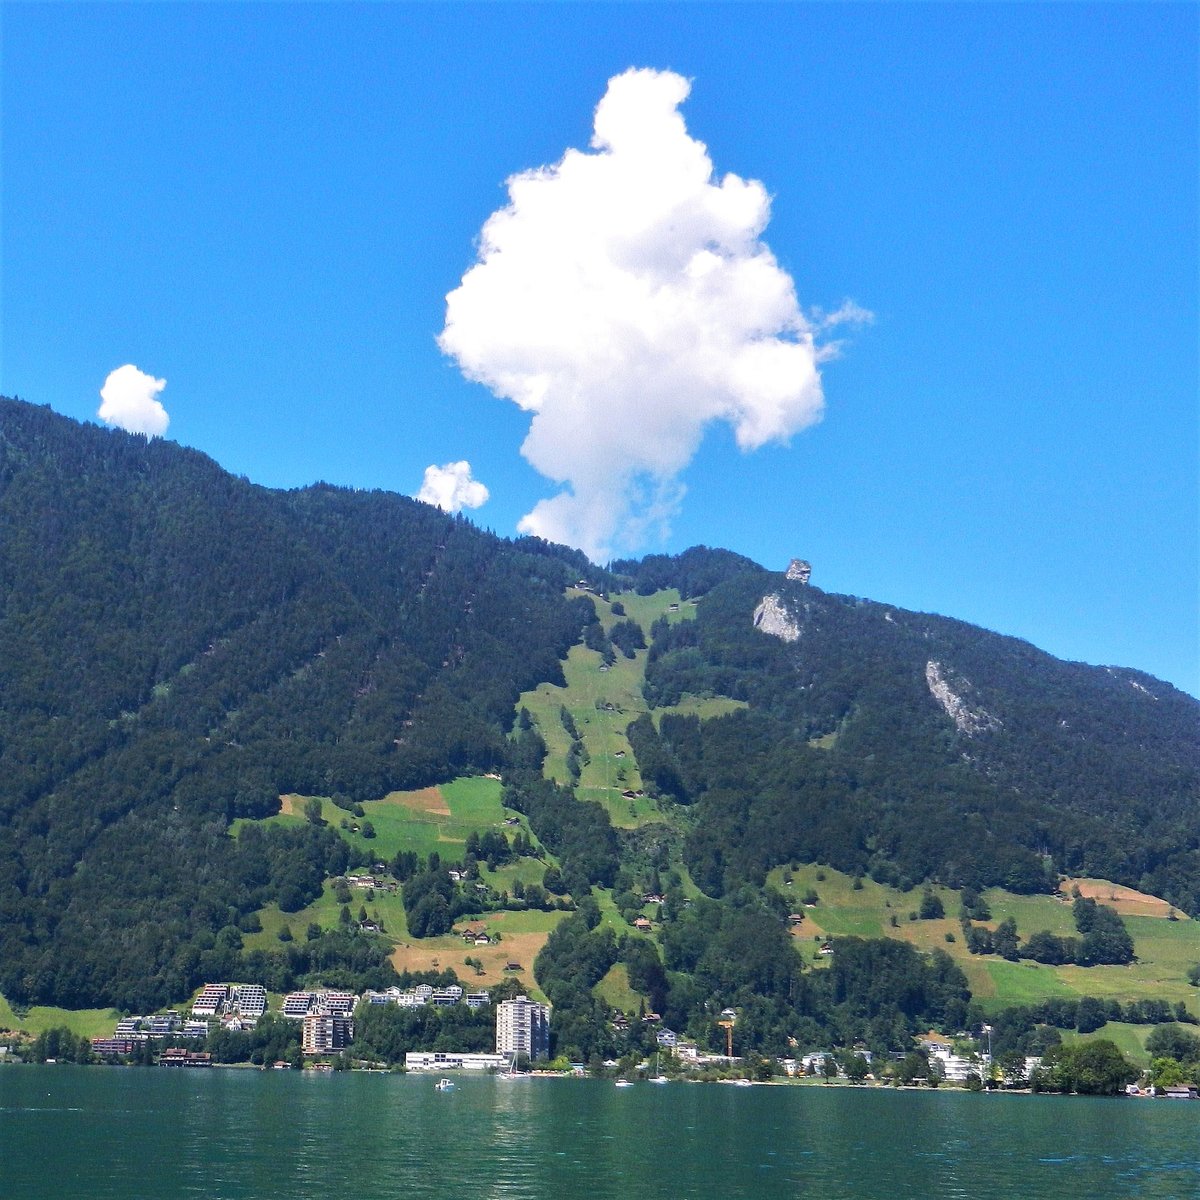 Blick über den Vierwaldstättersee in Richtung Urmiberg bei Brunnen, Kanton Schwyz, Schweiz - 17.07.2014